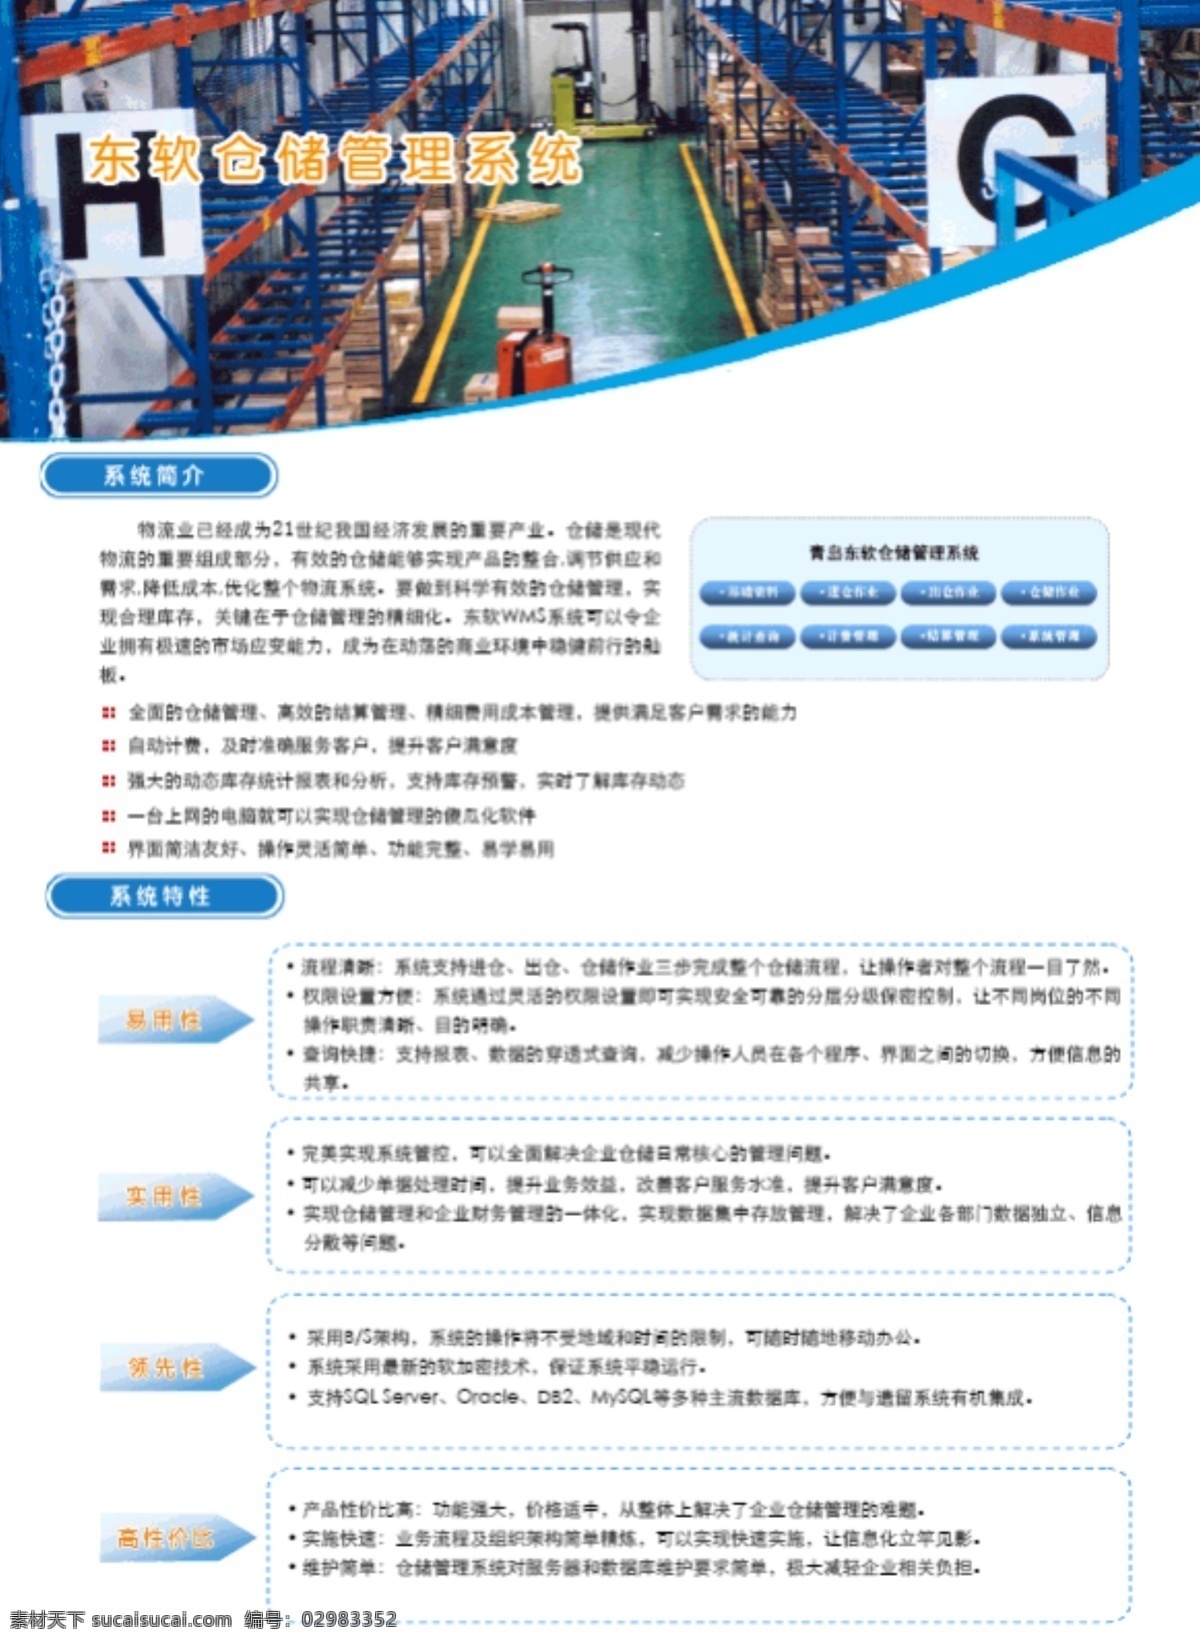 仓储 管理系统 dm 画册设计 货运 物流 运输 仓储管理系统 矢量 其他画册封面